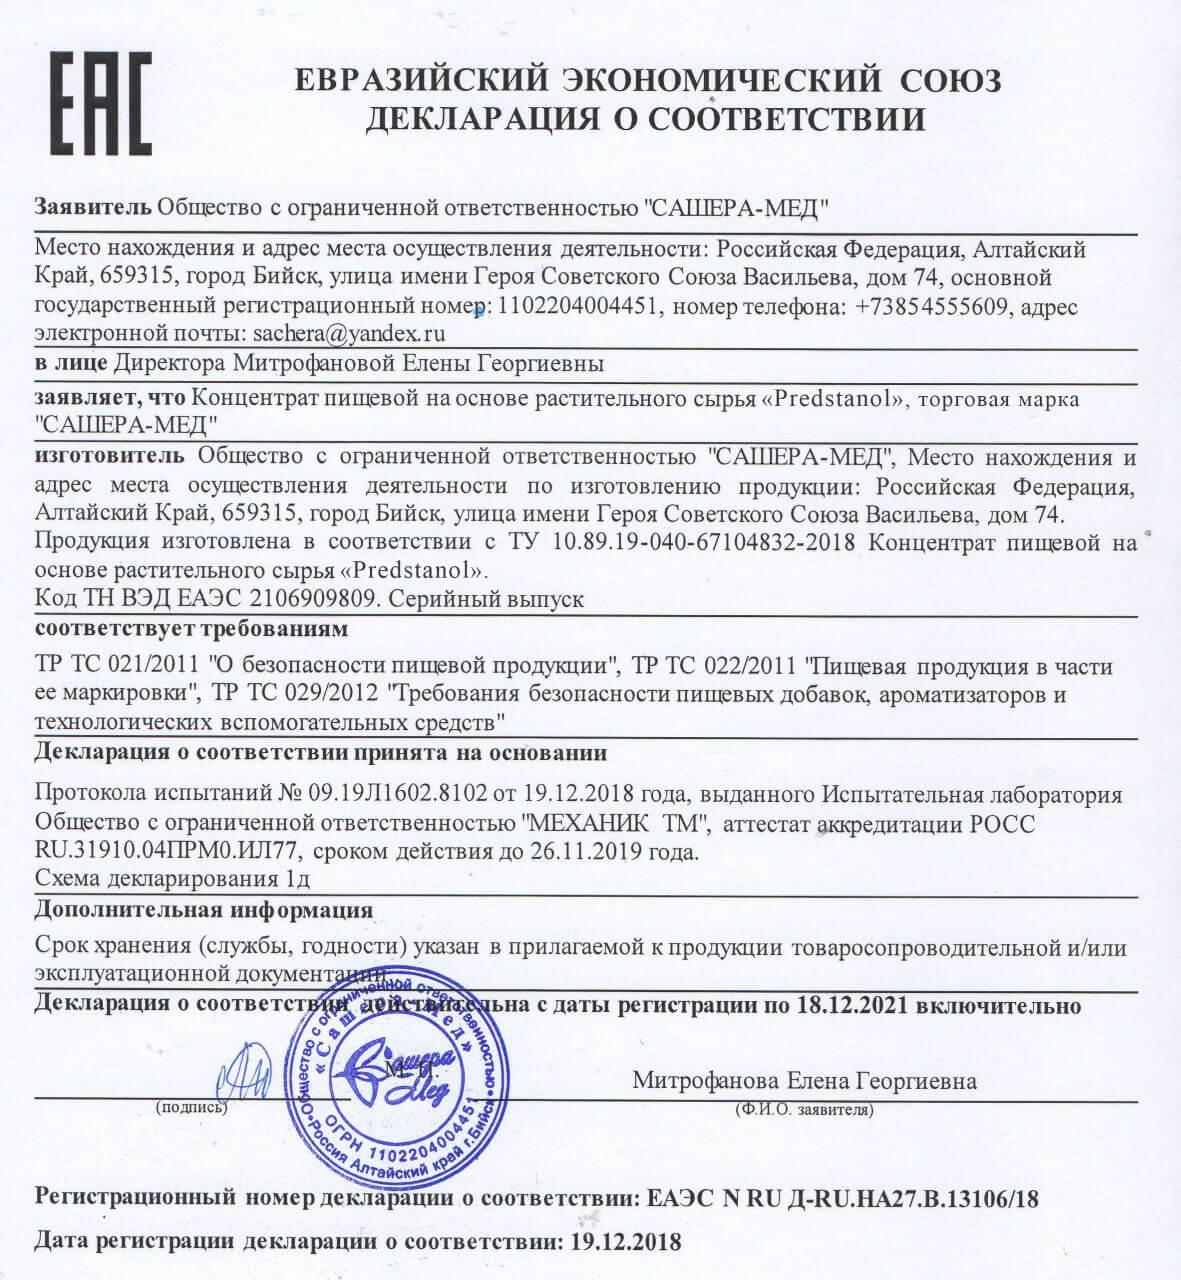 Сертификат на предстанол в Твери